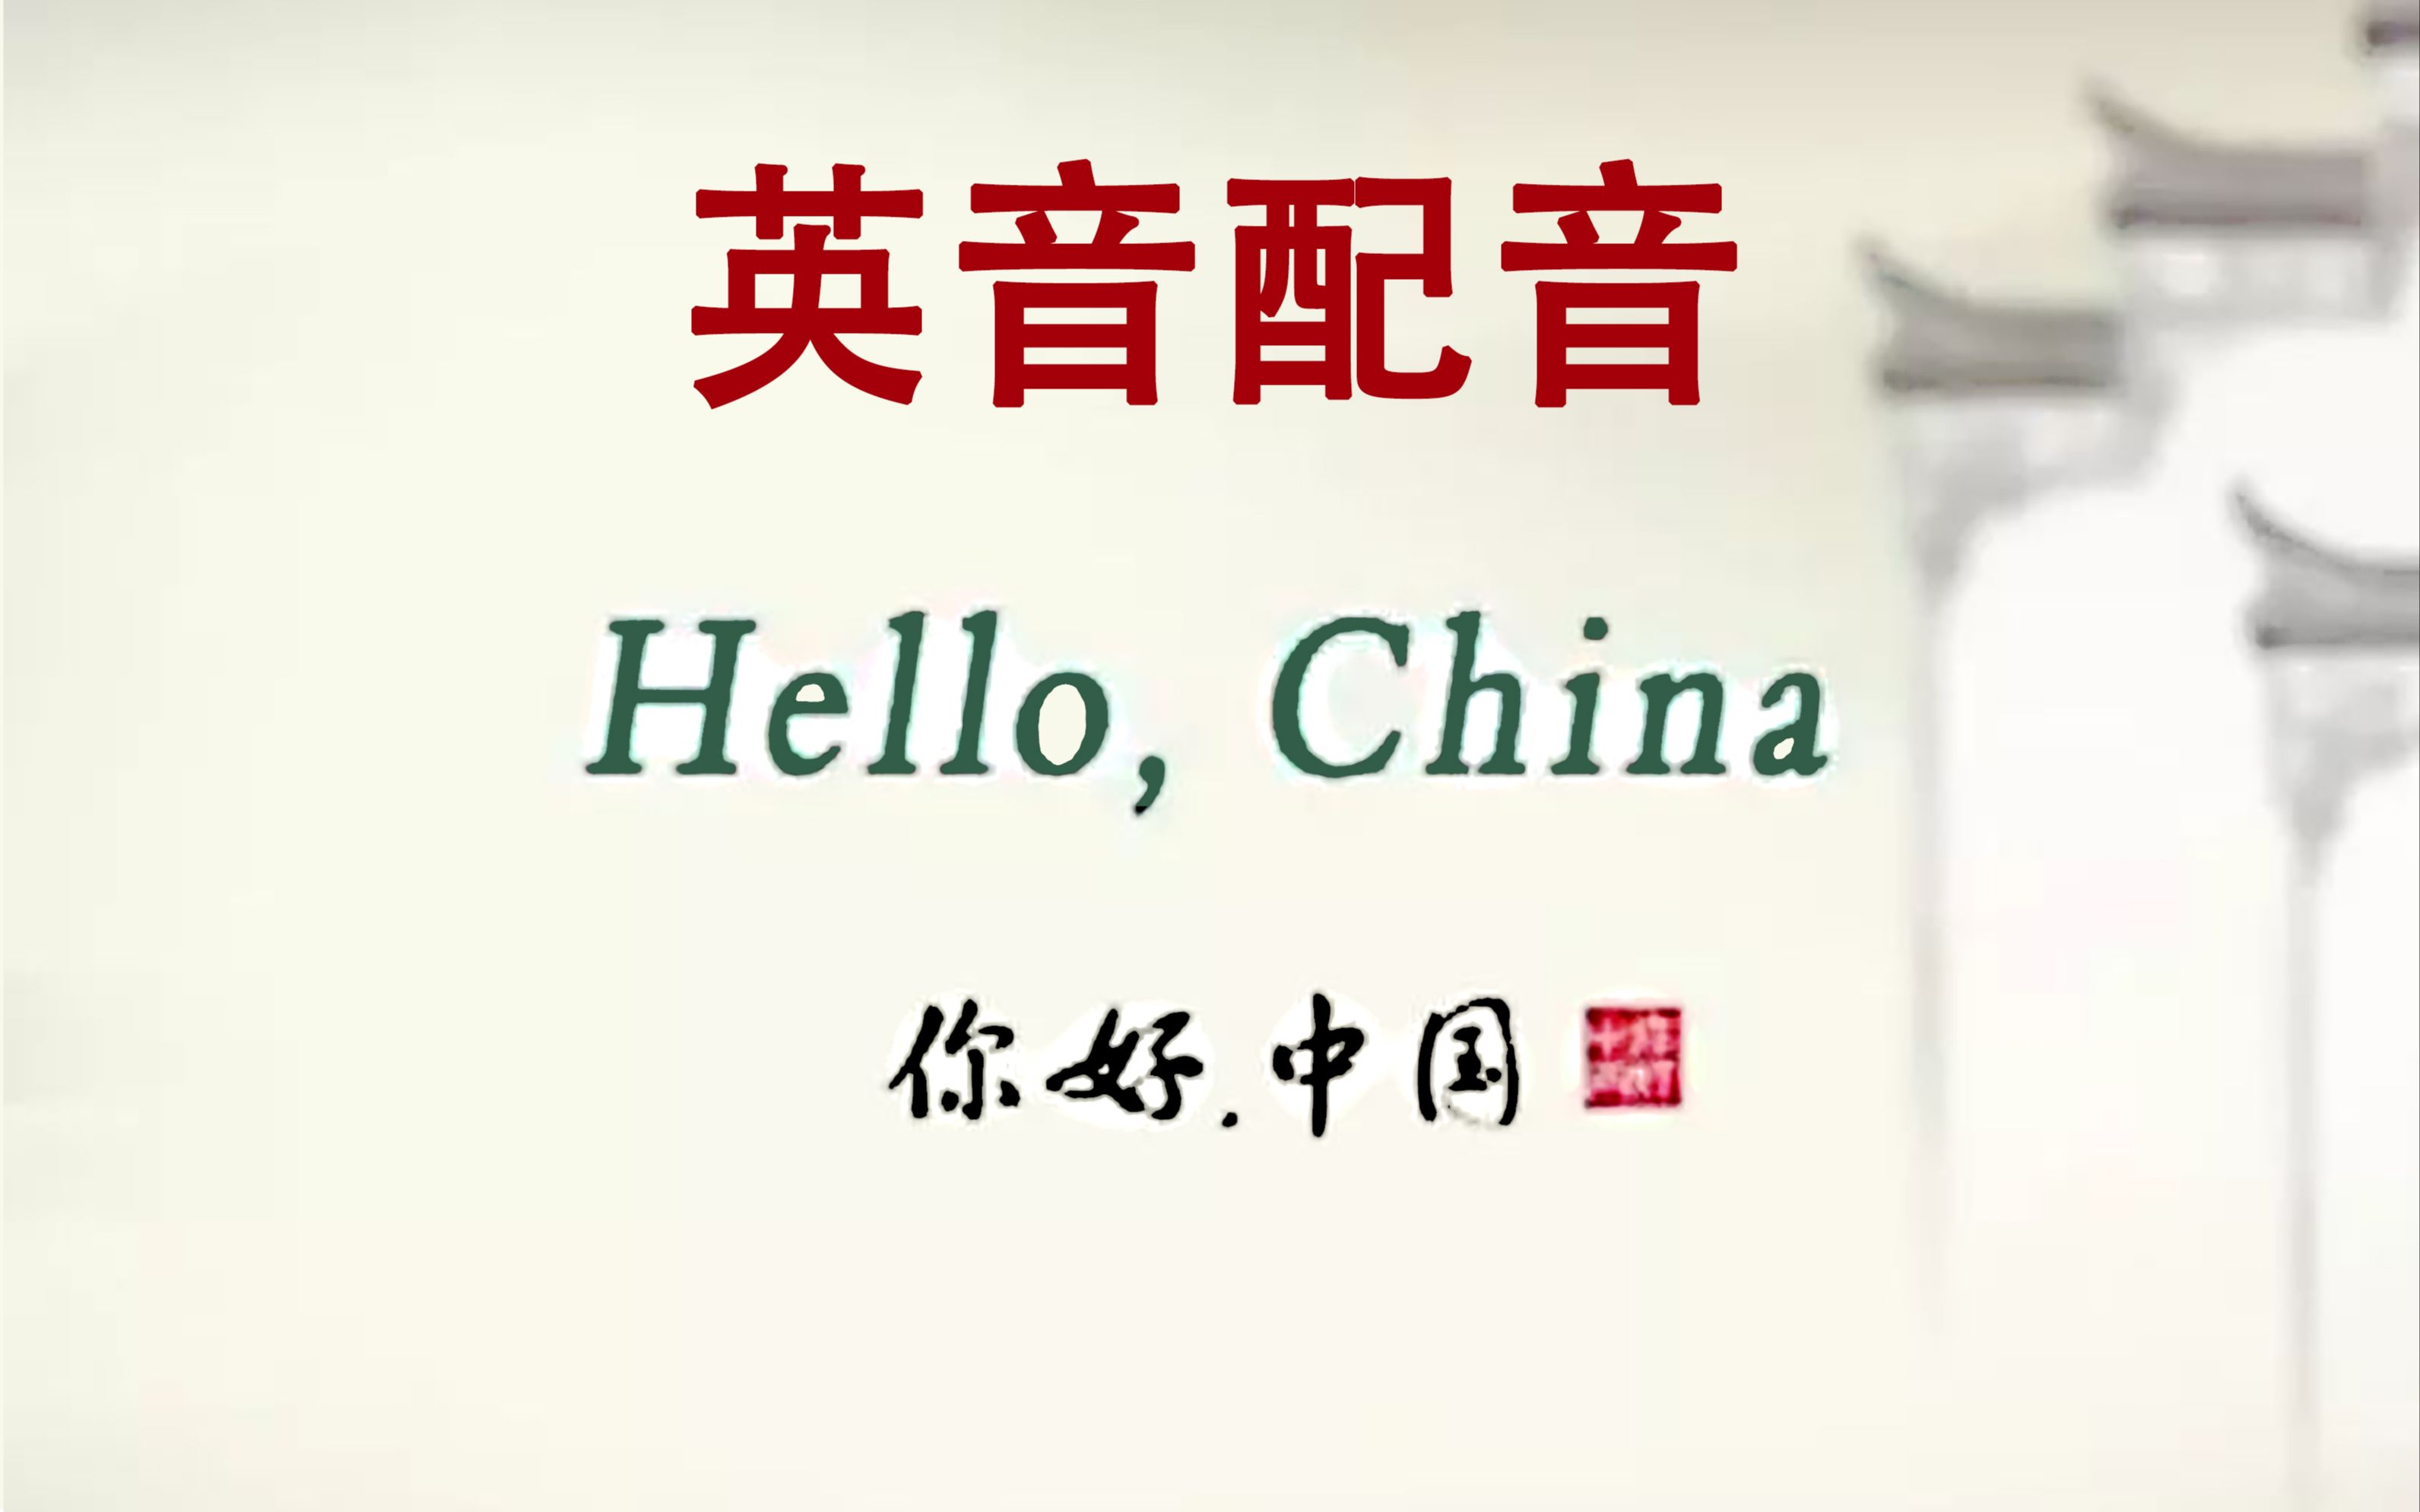 [图]【属相】Hello China《你好中国》英音配音